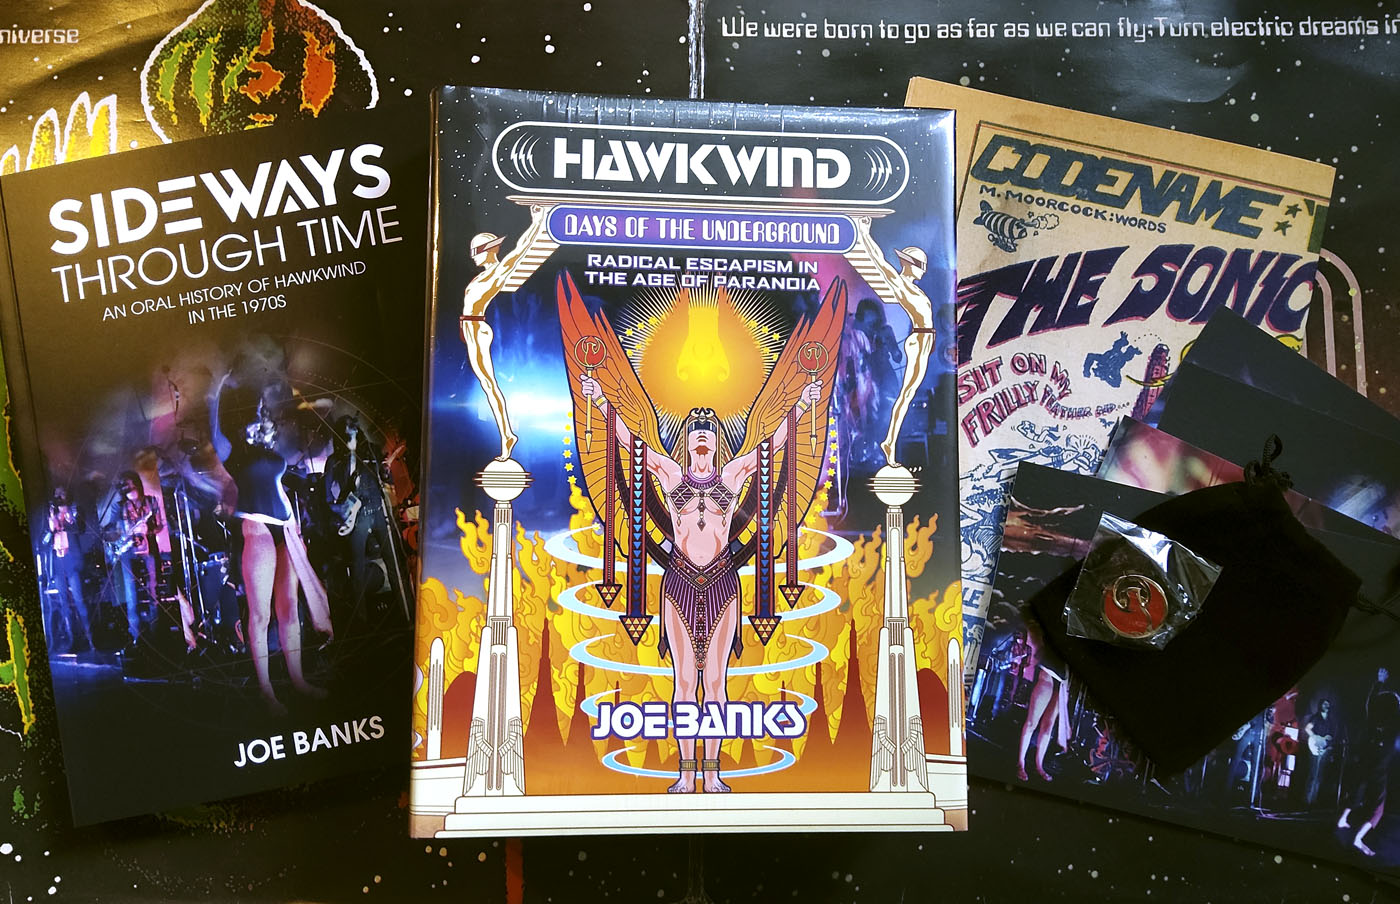 Hawkwind: Days of the Underground